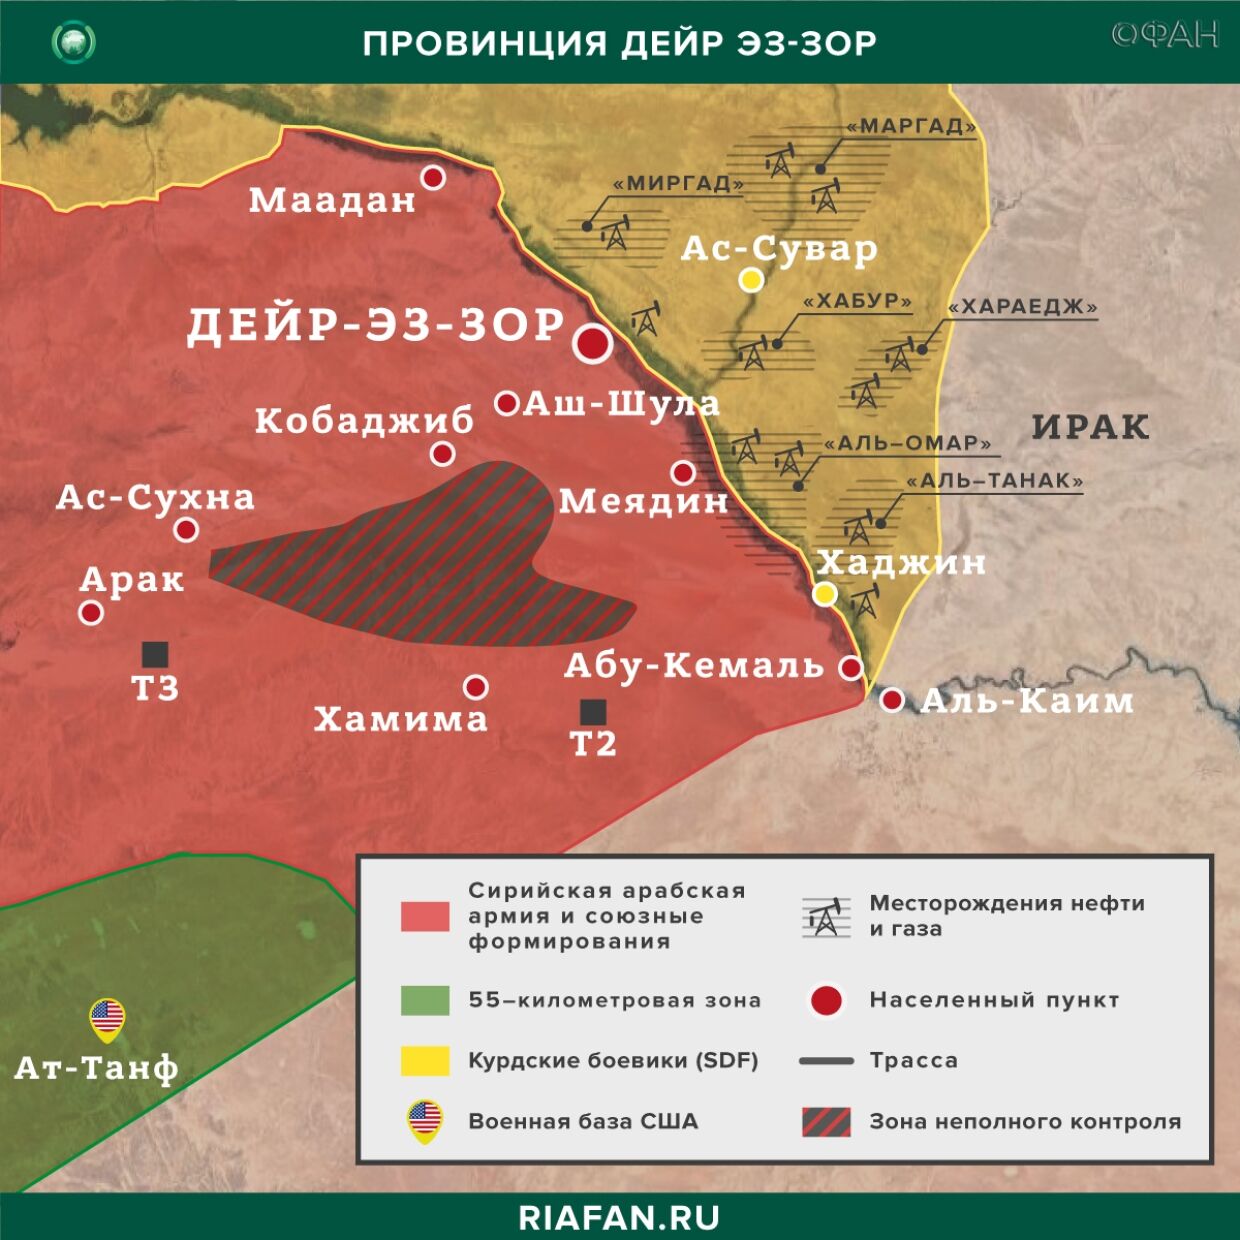 Nouvelles de Syrie 21 Mars 22.30: 80 террористов ИГ* вышли на свободу в Хасаке, боевики обстреляли штаб SDF в Дейр-эз-Зоре